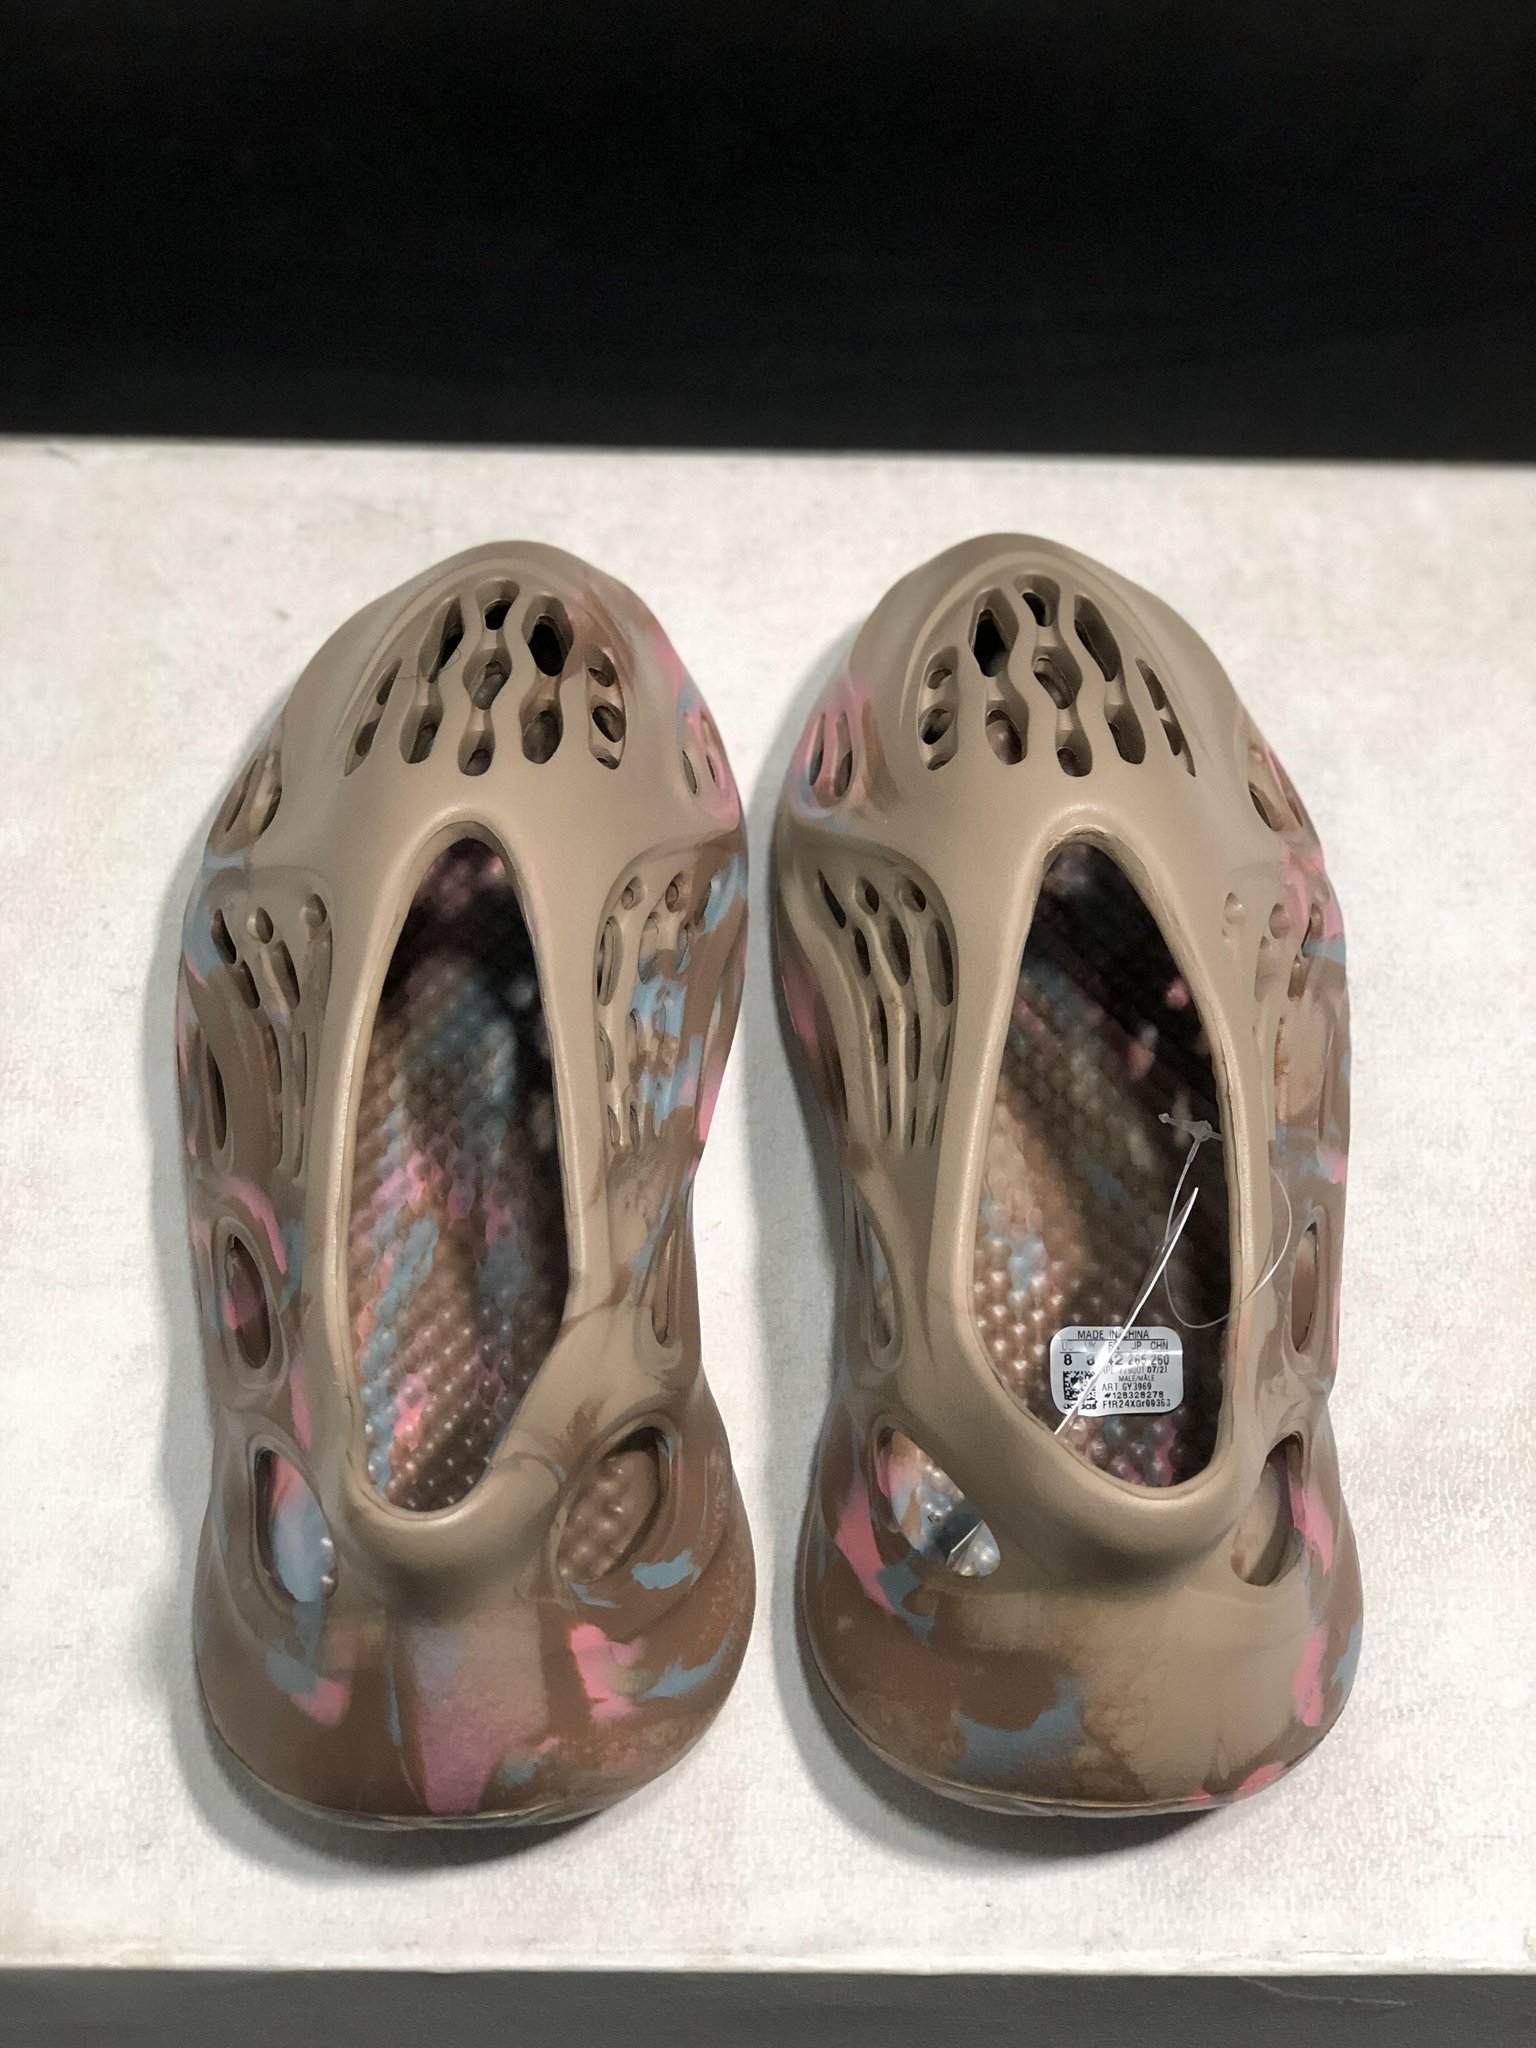        originals Yeezy Foam Runner MX Cream Clay sandal Yeezy women sandals  5